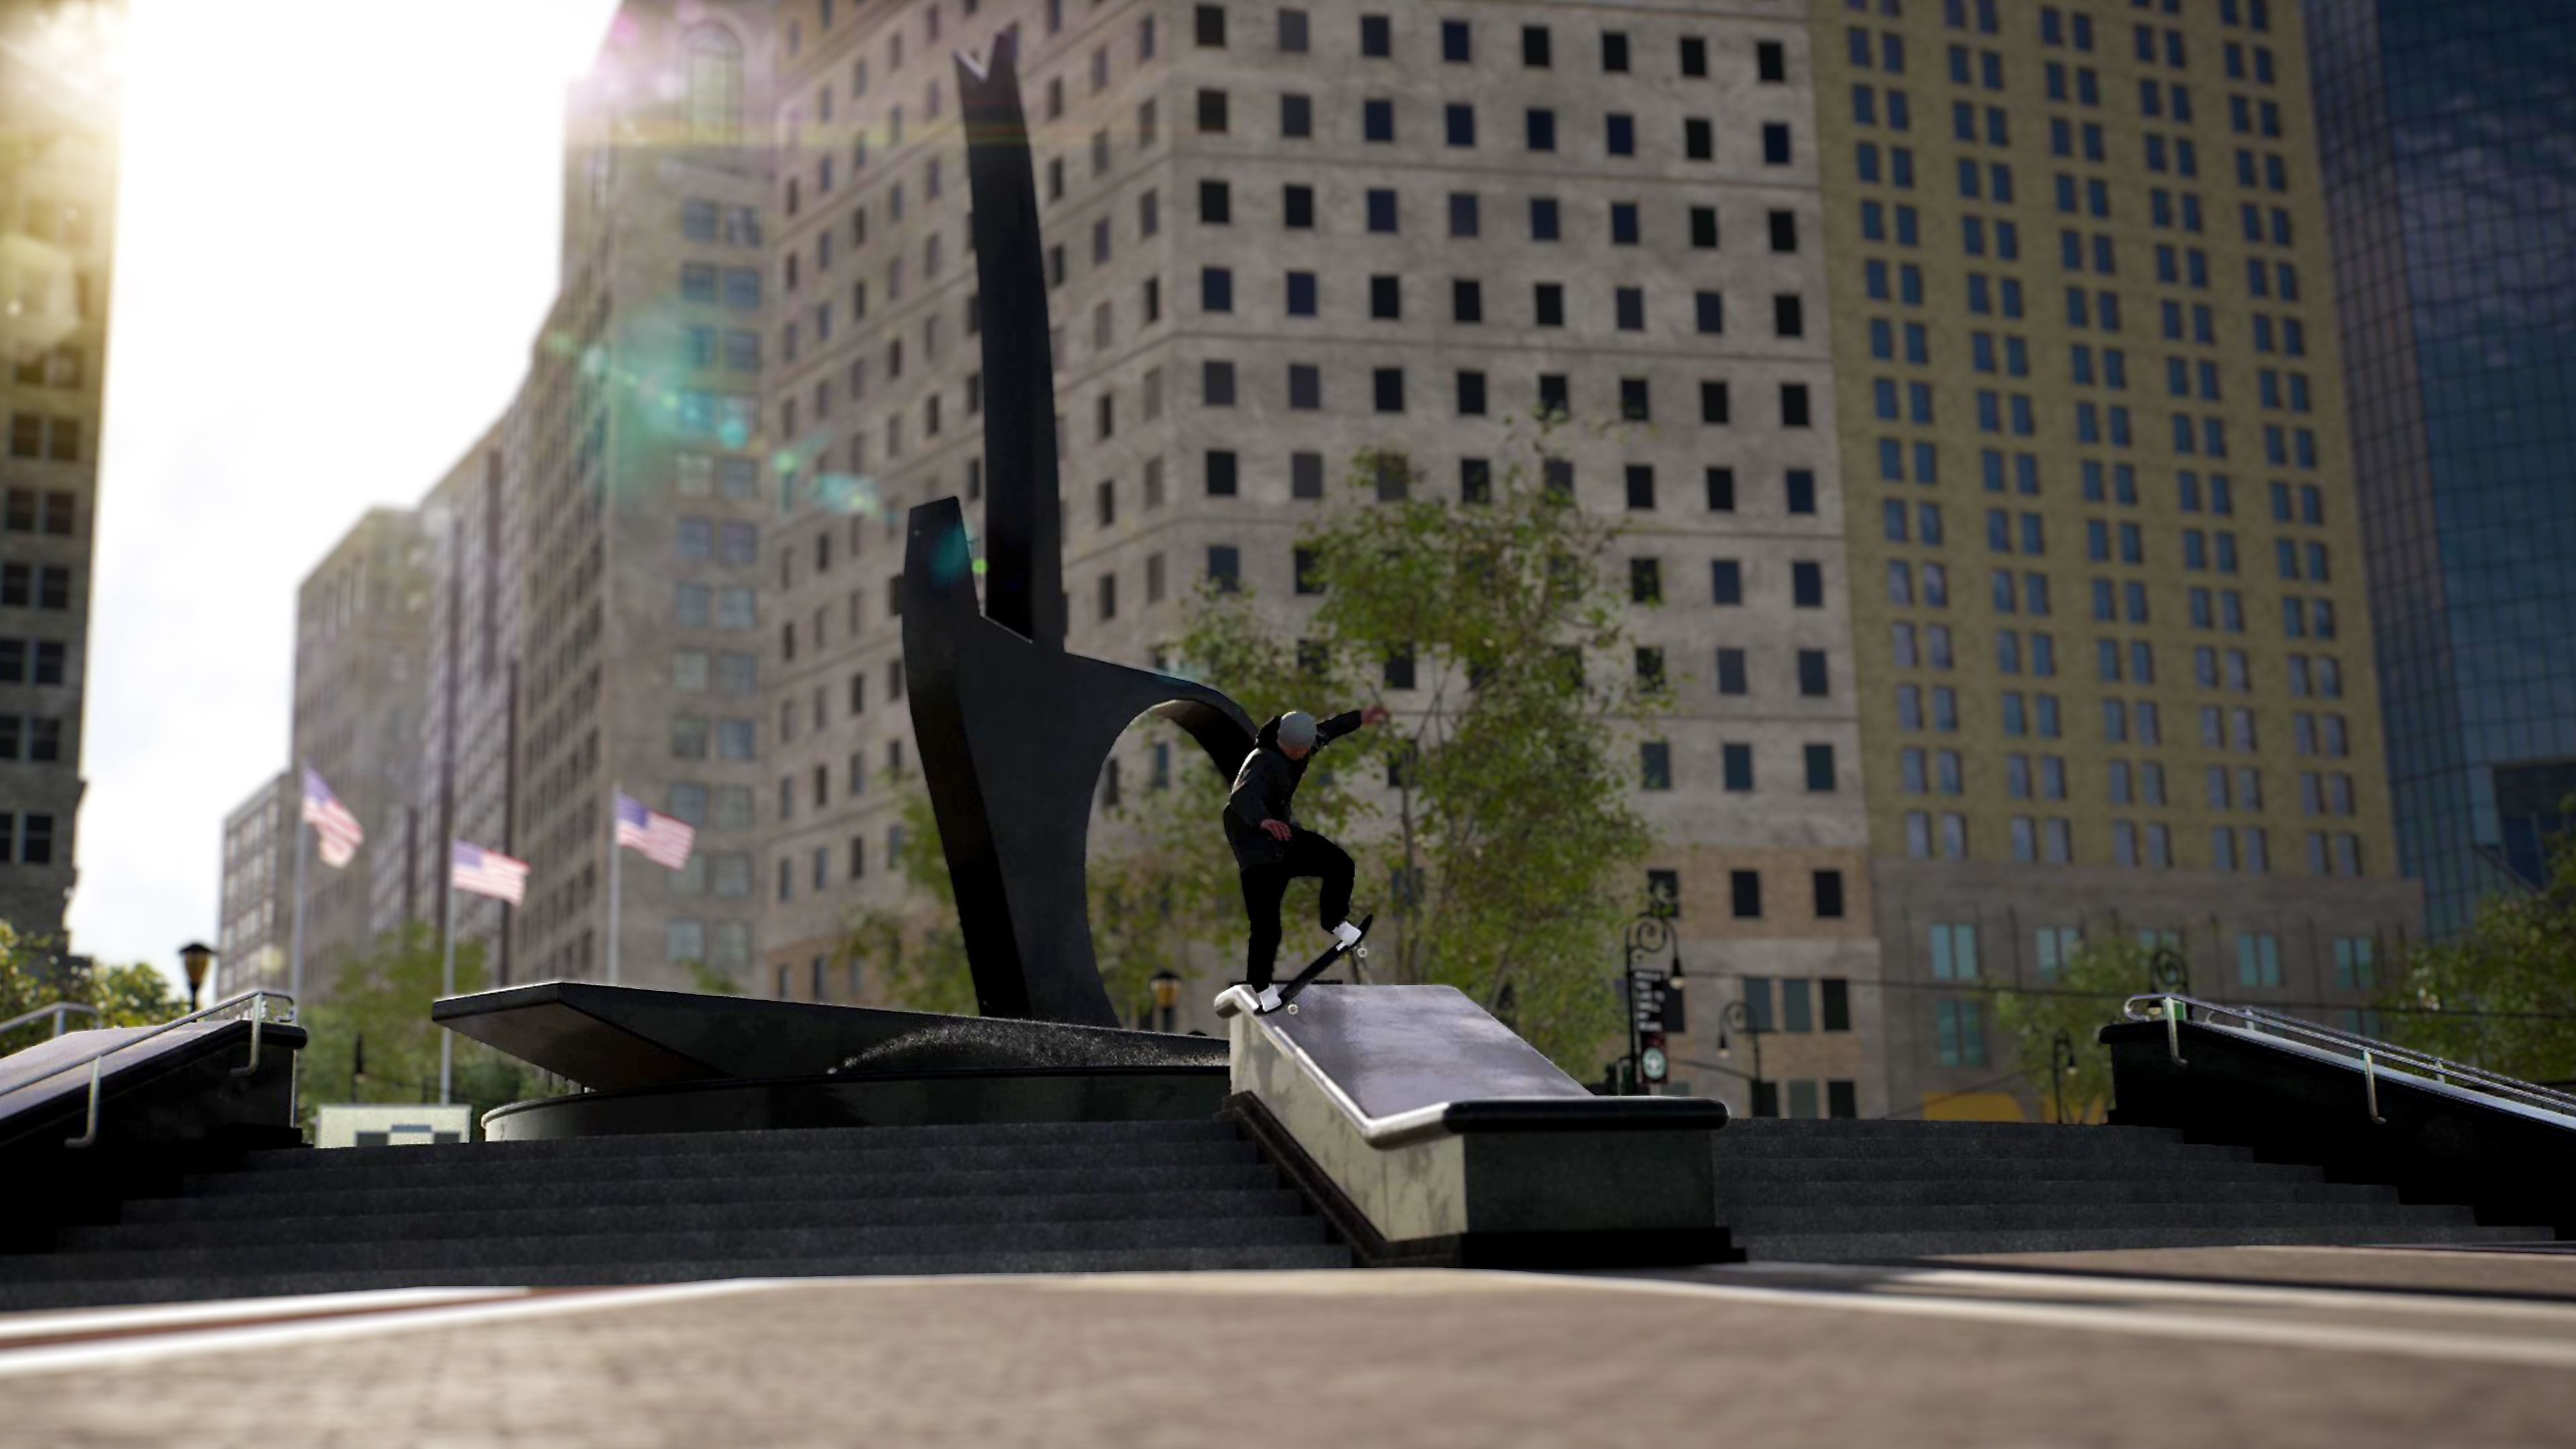 Session: Skate Sim - Istantanea della schermata che mostra uno skater che scivola su una sporgenza in una piazza urbana